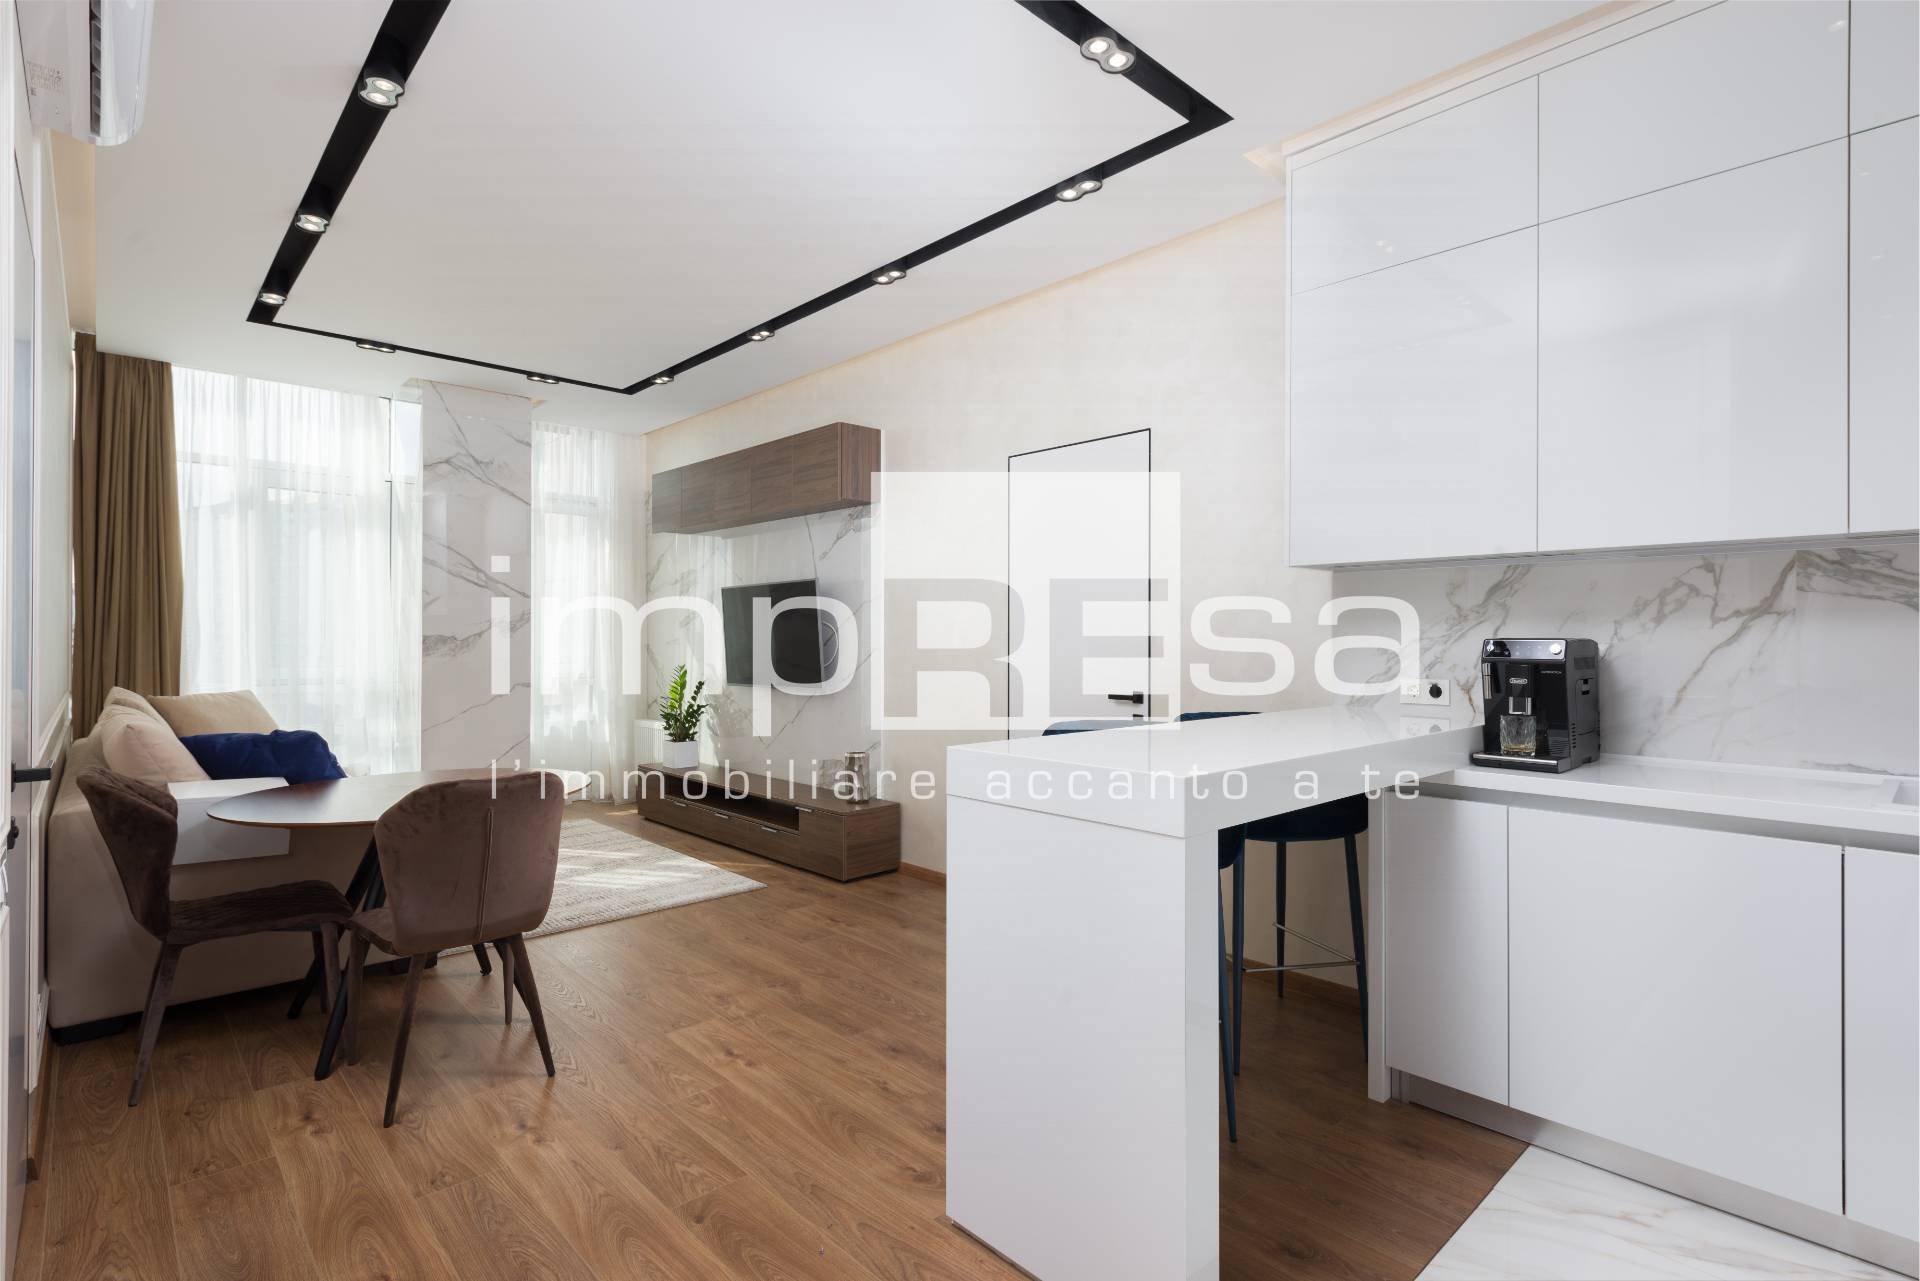 Appartamento in vendita a Prata di Pordenone, 4 locali, prezzo € 255.000 | PortaleAgenzieImmobiliari.it